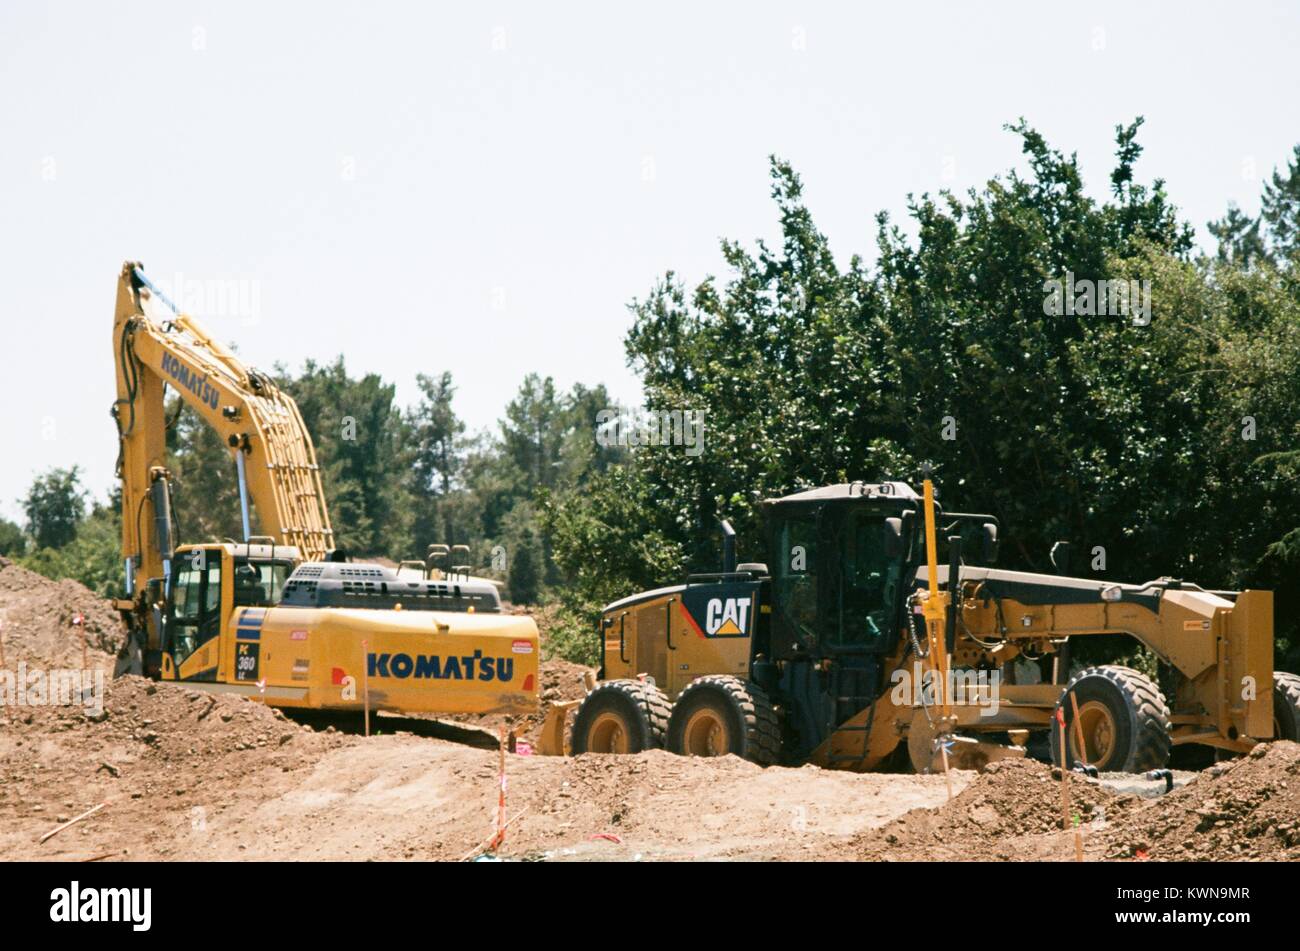 Les véhicules de construction Caterpillar et Komatsu sont visibles entre les tas de terre à l'Apple Park, connu familièrement comme "le vaisseau spatial", le nouveau quartier général d'Apple Inc dans la Silicon Valley ville de Cupertino, Californie, 25 juillet 2017. Banque D'Images